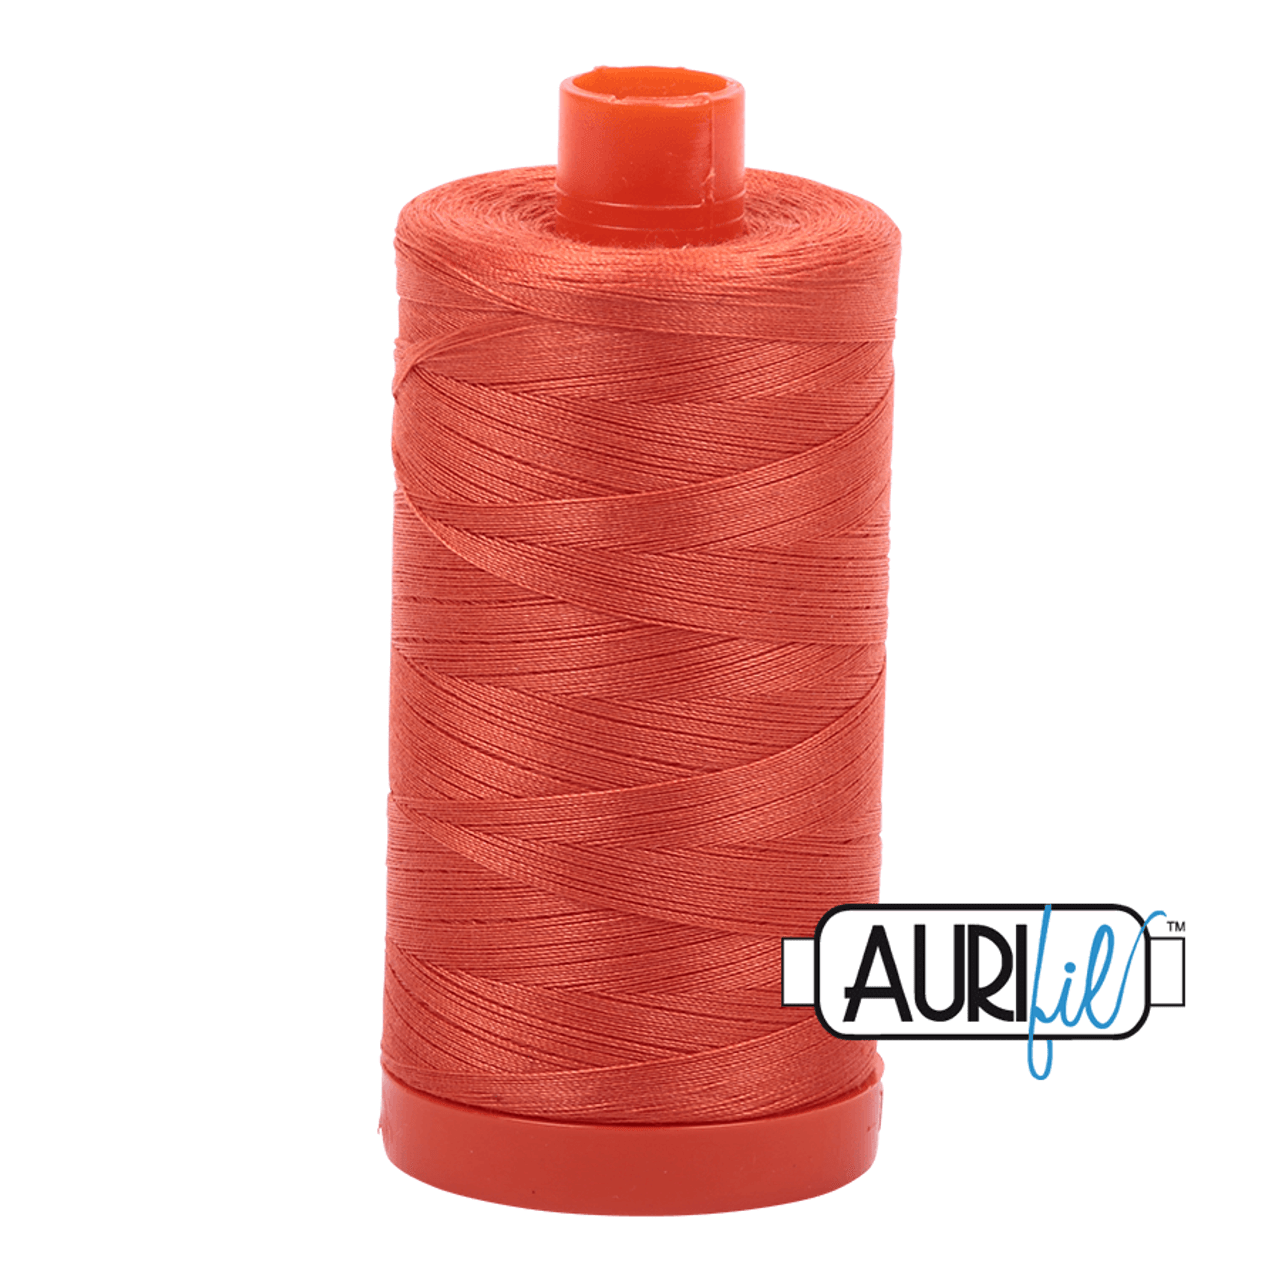 Aurifil Dusty Orange 50WT Quilting Thread 1154